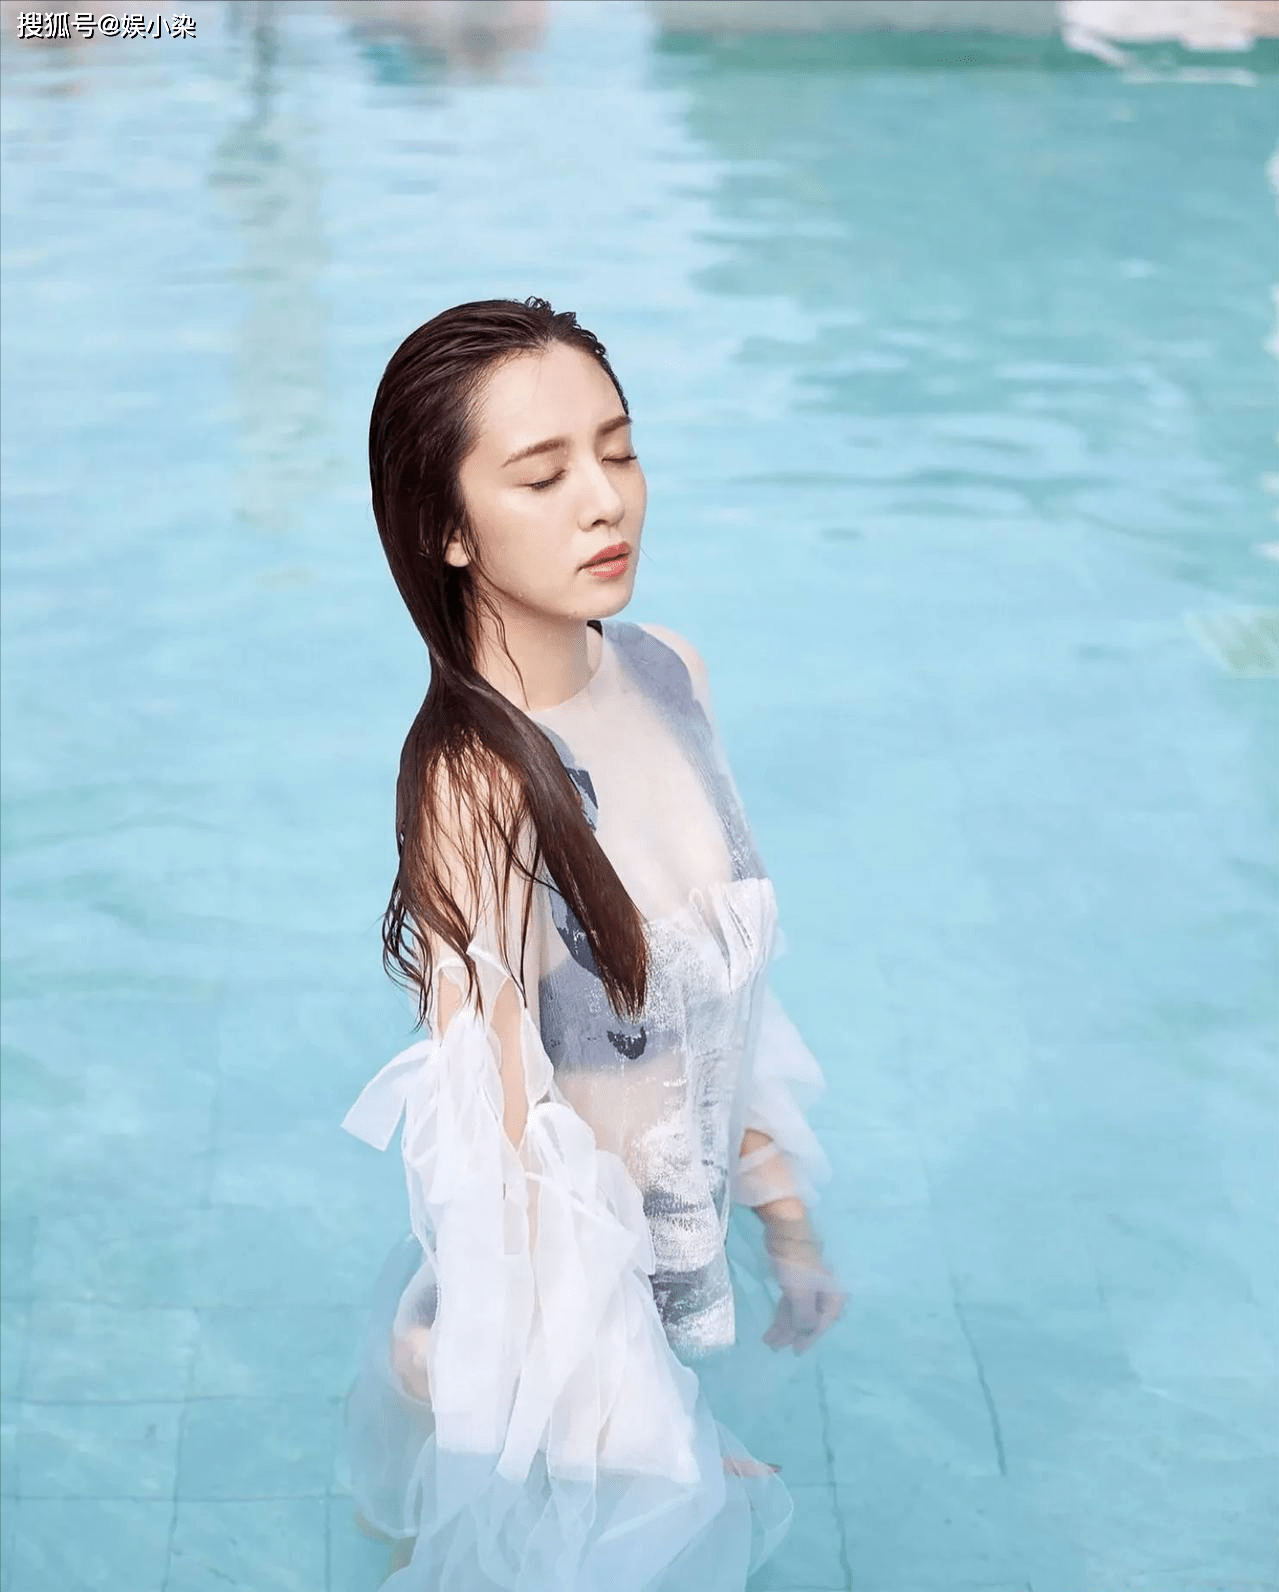 31岁的王晓晨有多美?当她的泳装照片流出来,被赞看起来旺夫